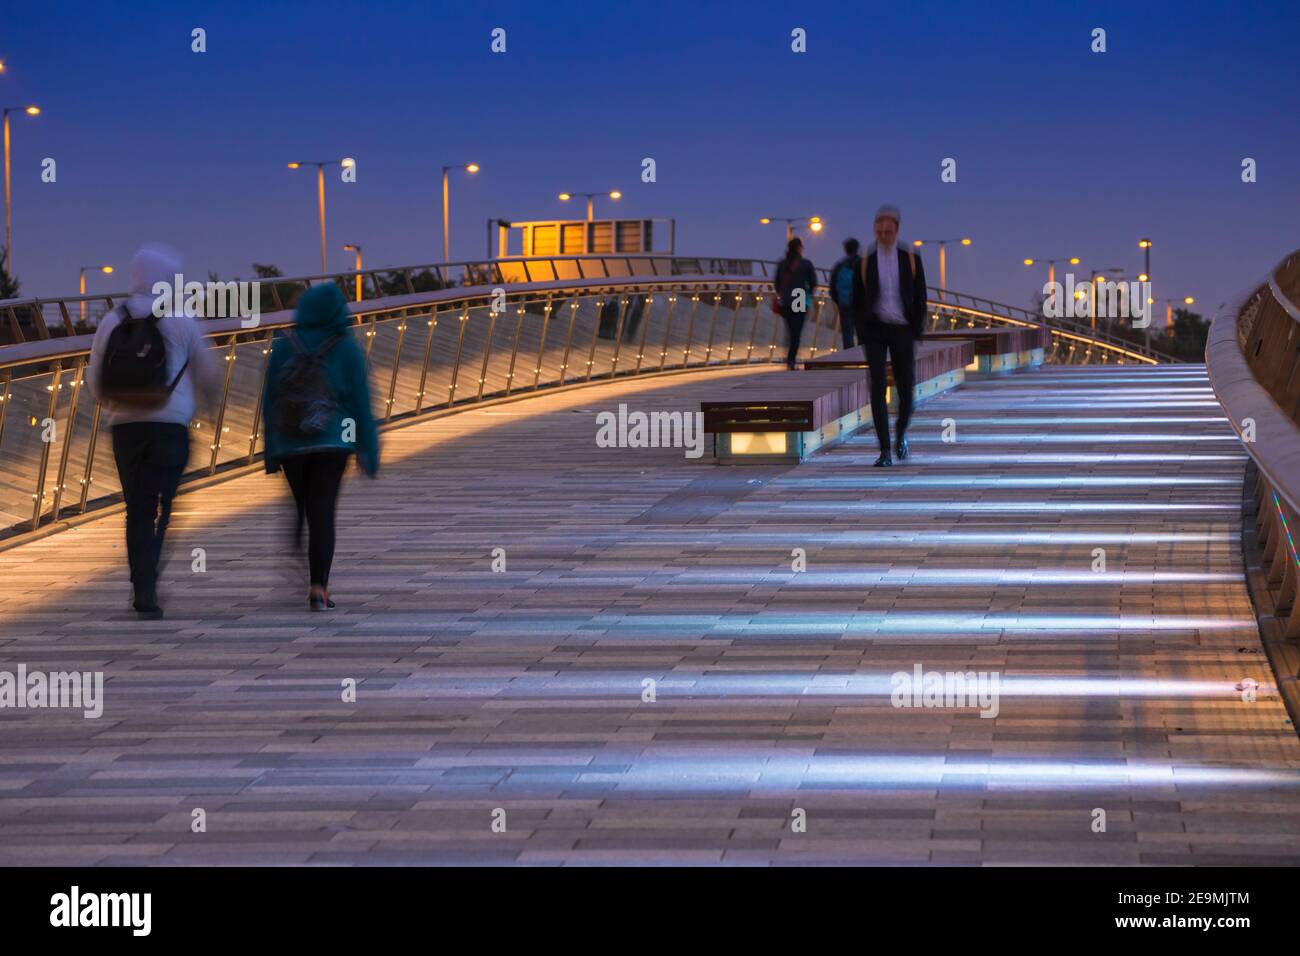 Vereinigtes Königreich, Nordirland, Belfast, Lagan Weir Fußgängerzone und Radbrücke Stockfoto